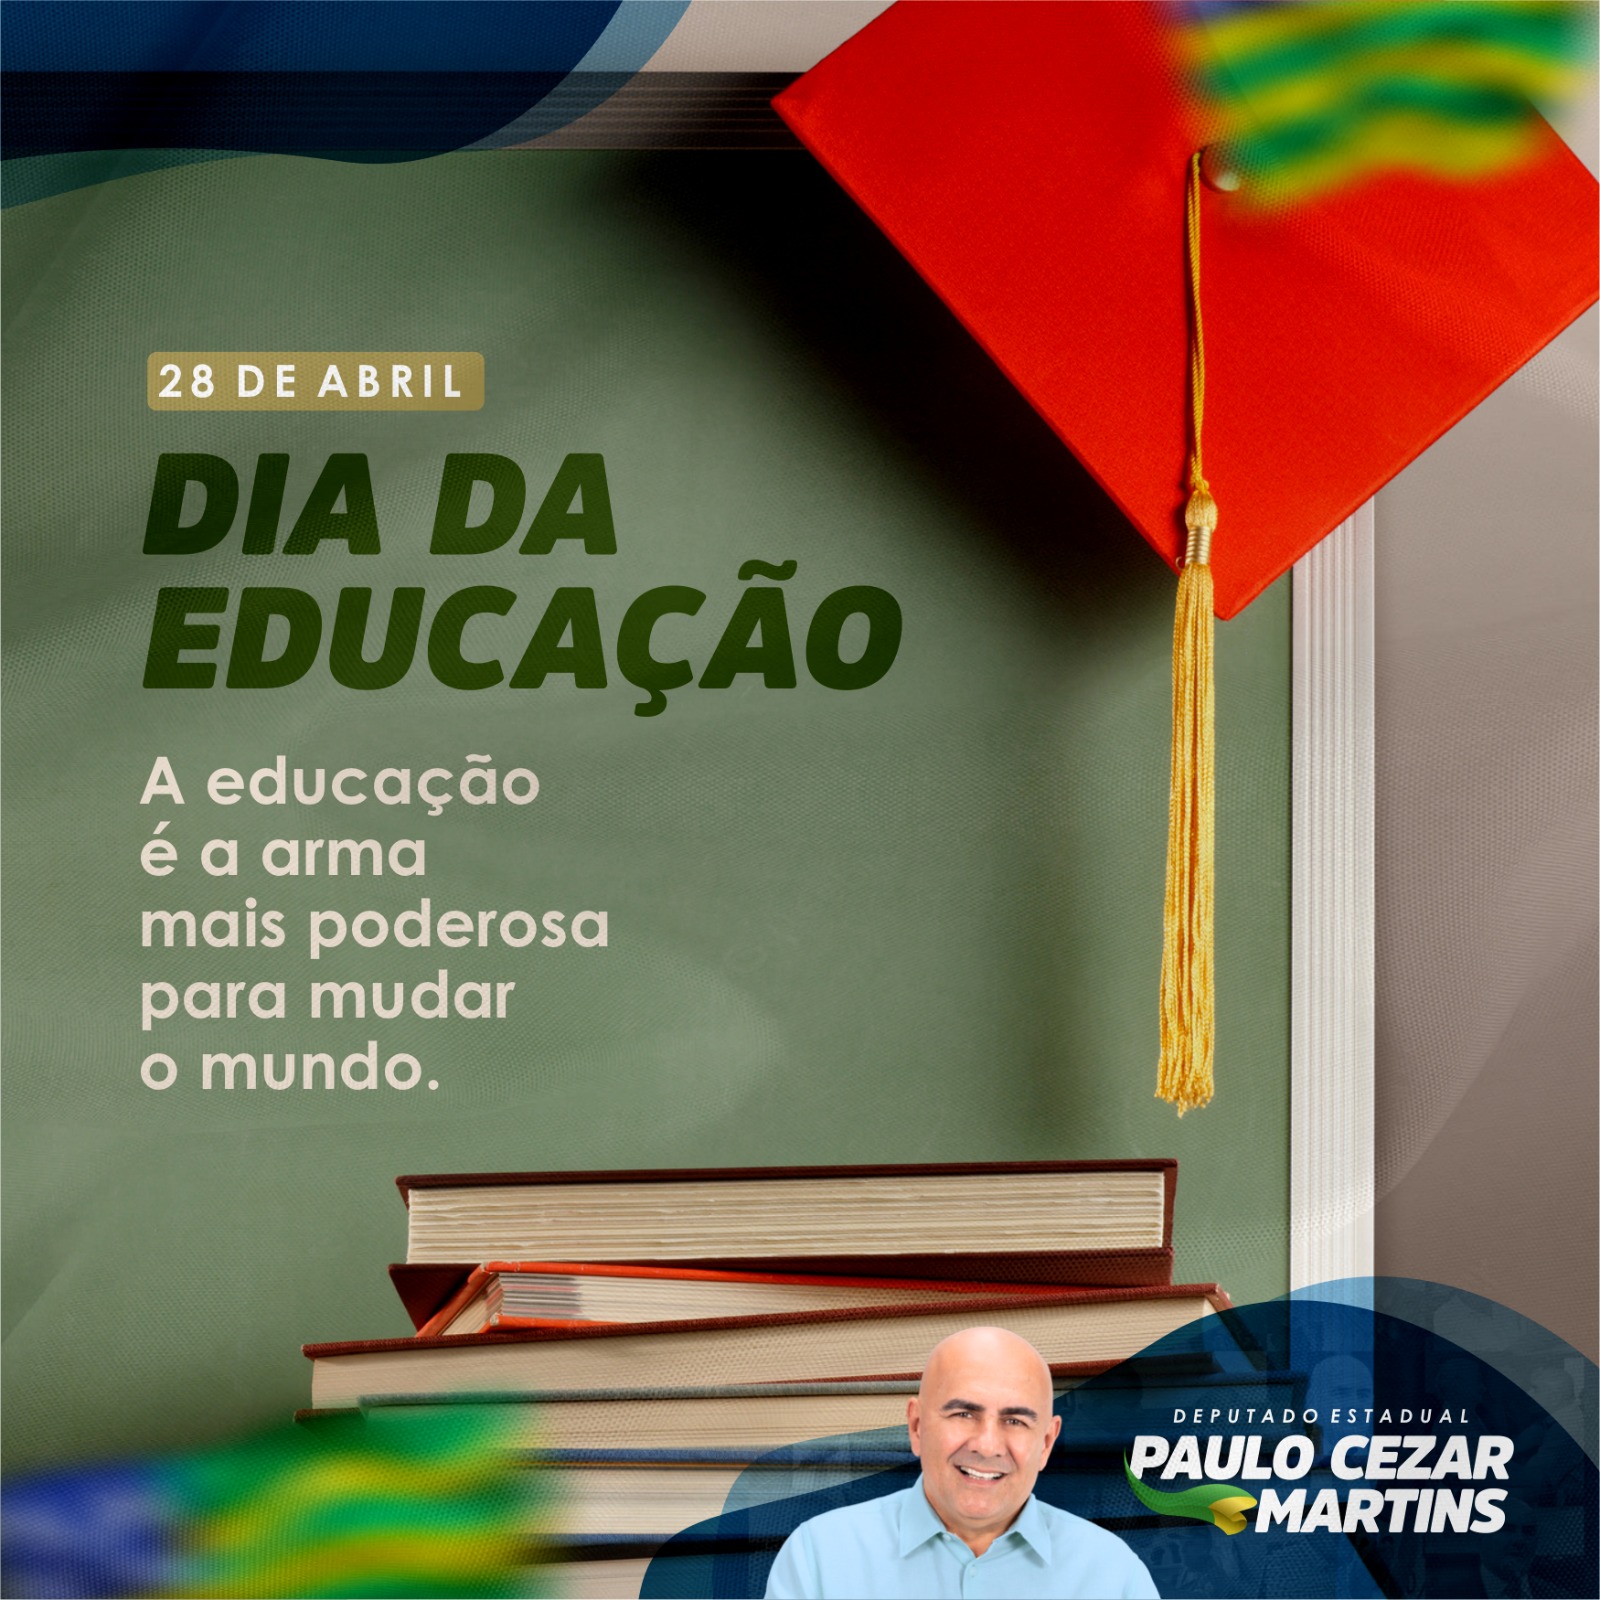 Dia Internacional da Educação foi criado em 28 de abril de 2000,